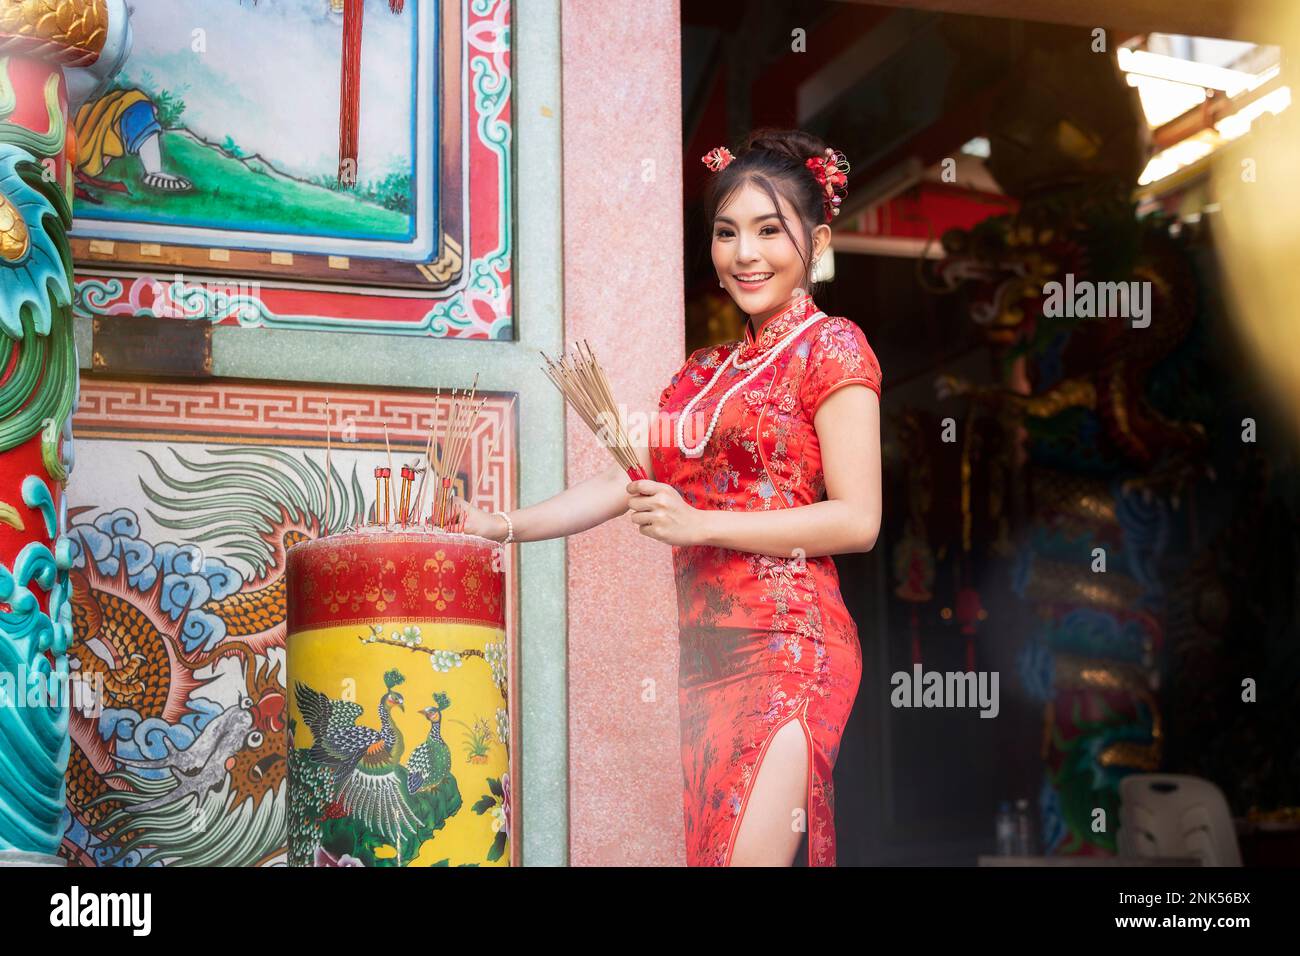 Konzept zur Feier des chinesischen Neujahrs, Vegetarian Festival : Chinesische Frau in rotem Cheongsam-Kleid mit Weihrauch ehrt chinesischen gott im Shrin Stockfoto